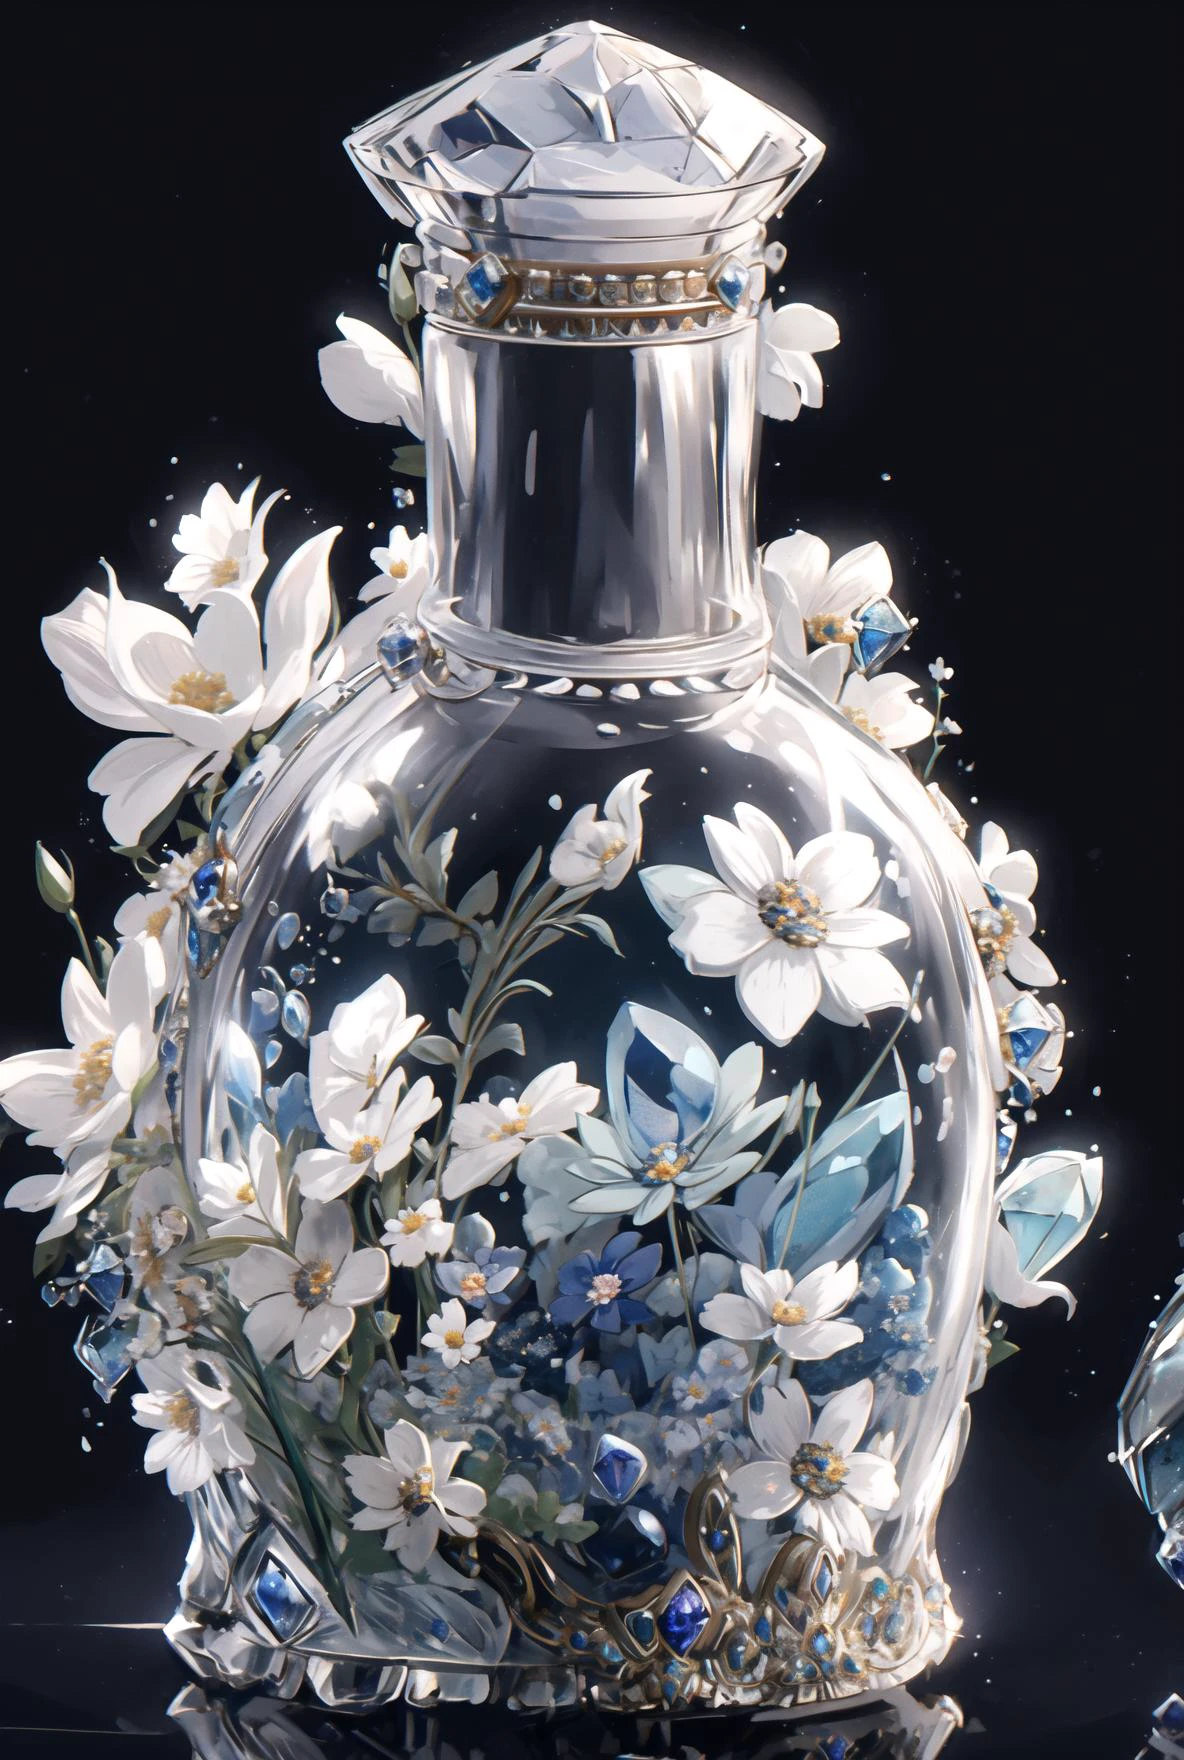 テーブルの上に花の入ったガラスの花瓶がある - SeaArt AI